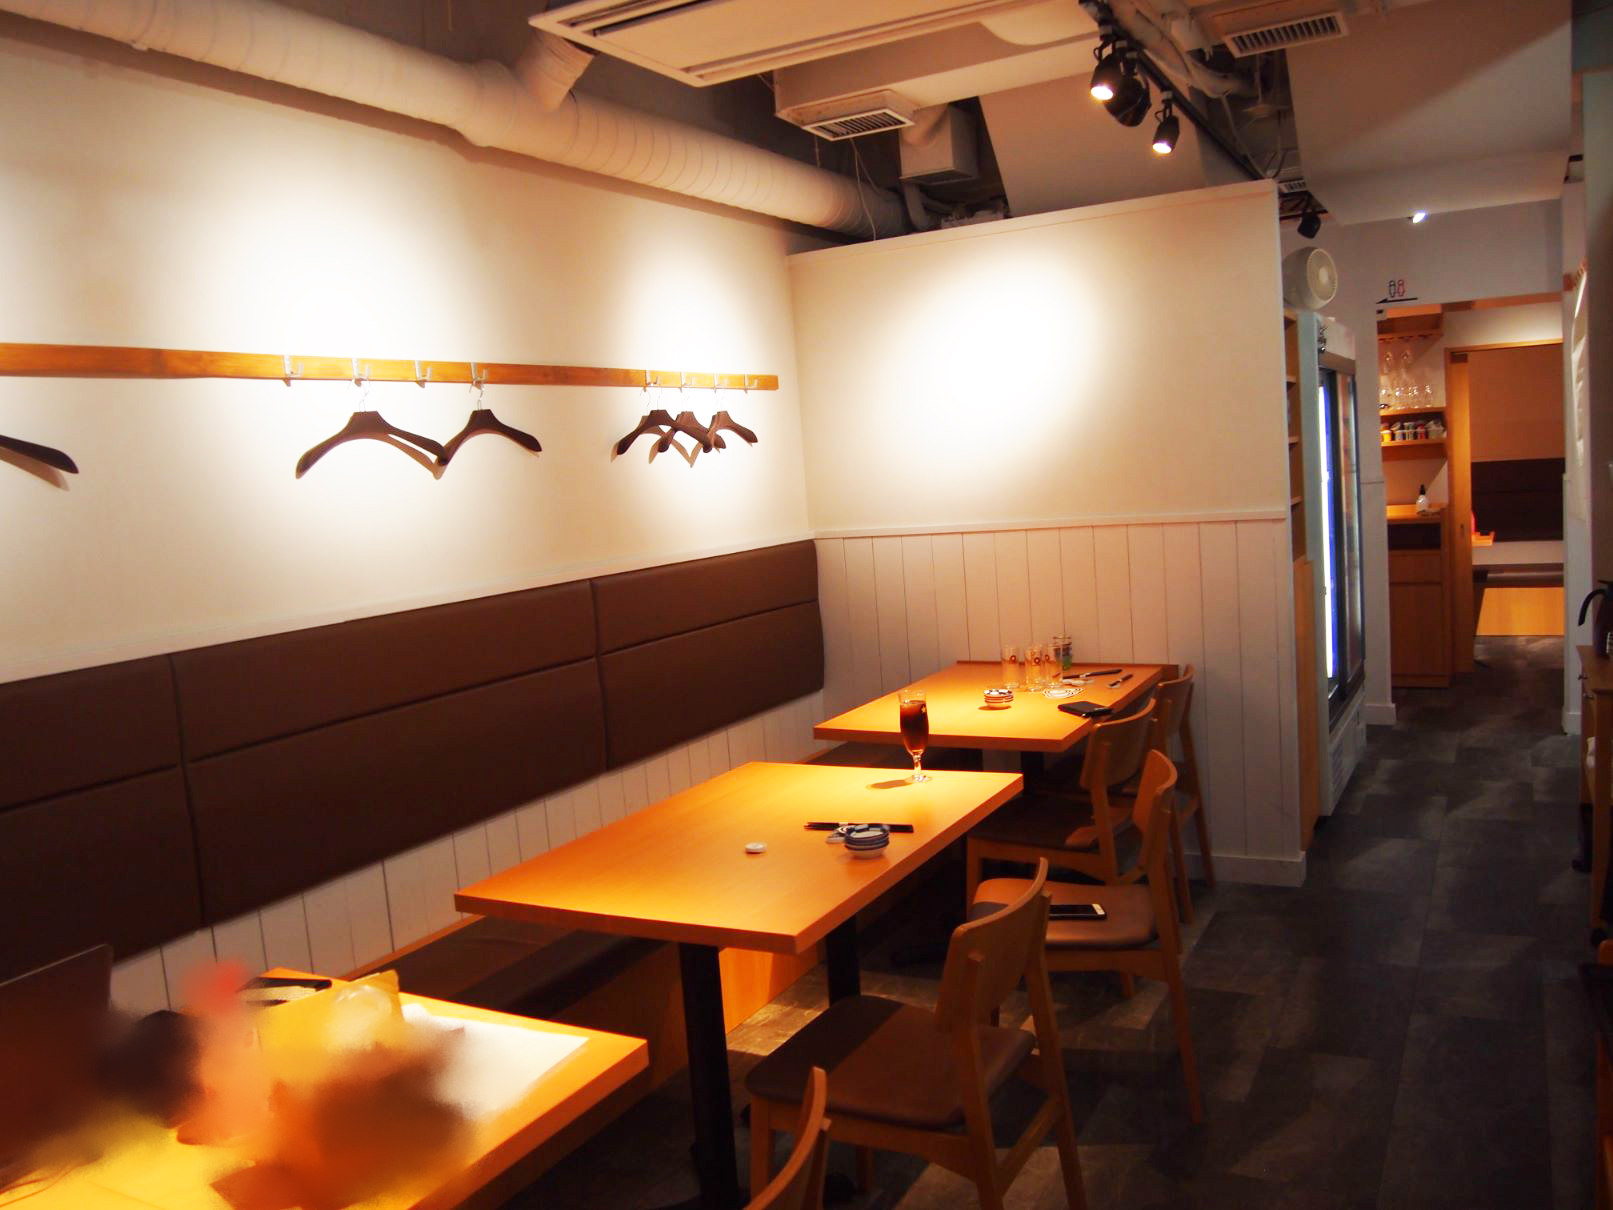 【神田】『和食日和 おさけと』日本橋室町店。イタリアンから高級感のある和の空間へ変化。